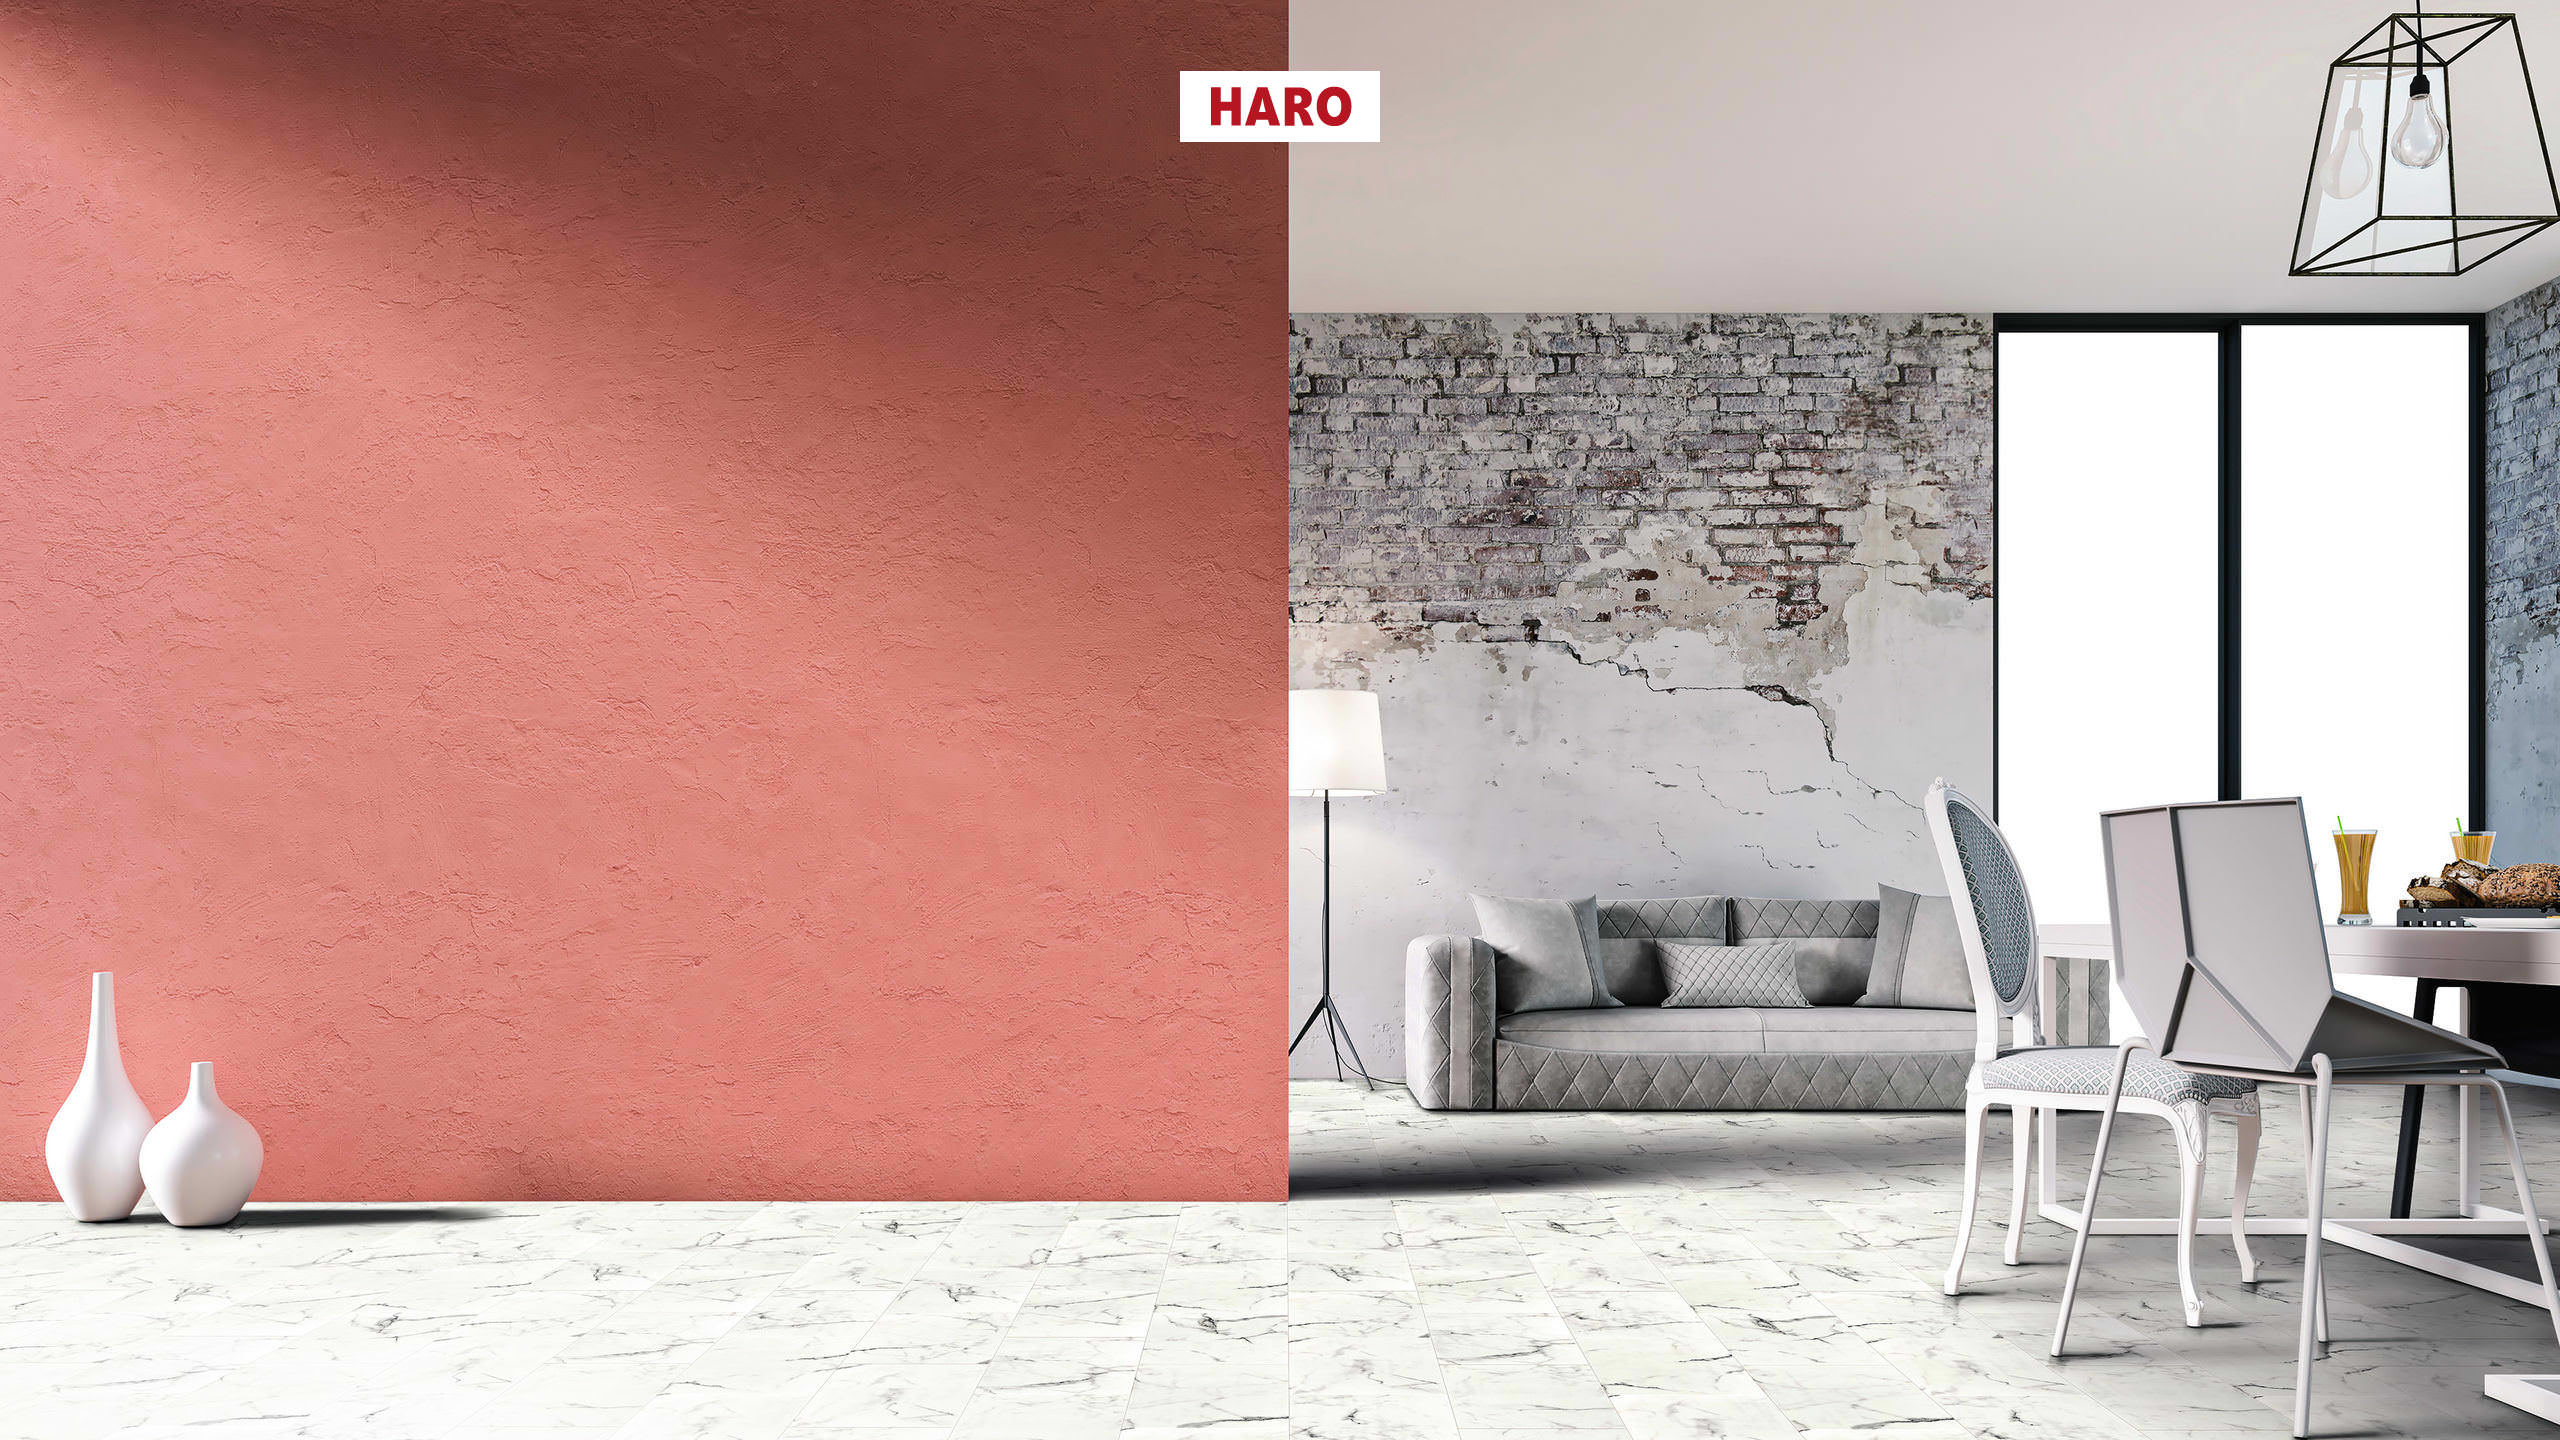 Haro DISANO Projekt Design Piazza Marmor weiß Steinstruktur